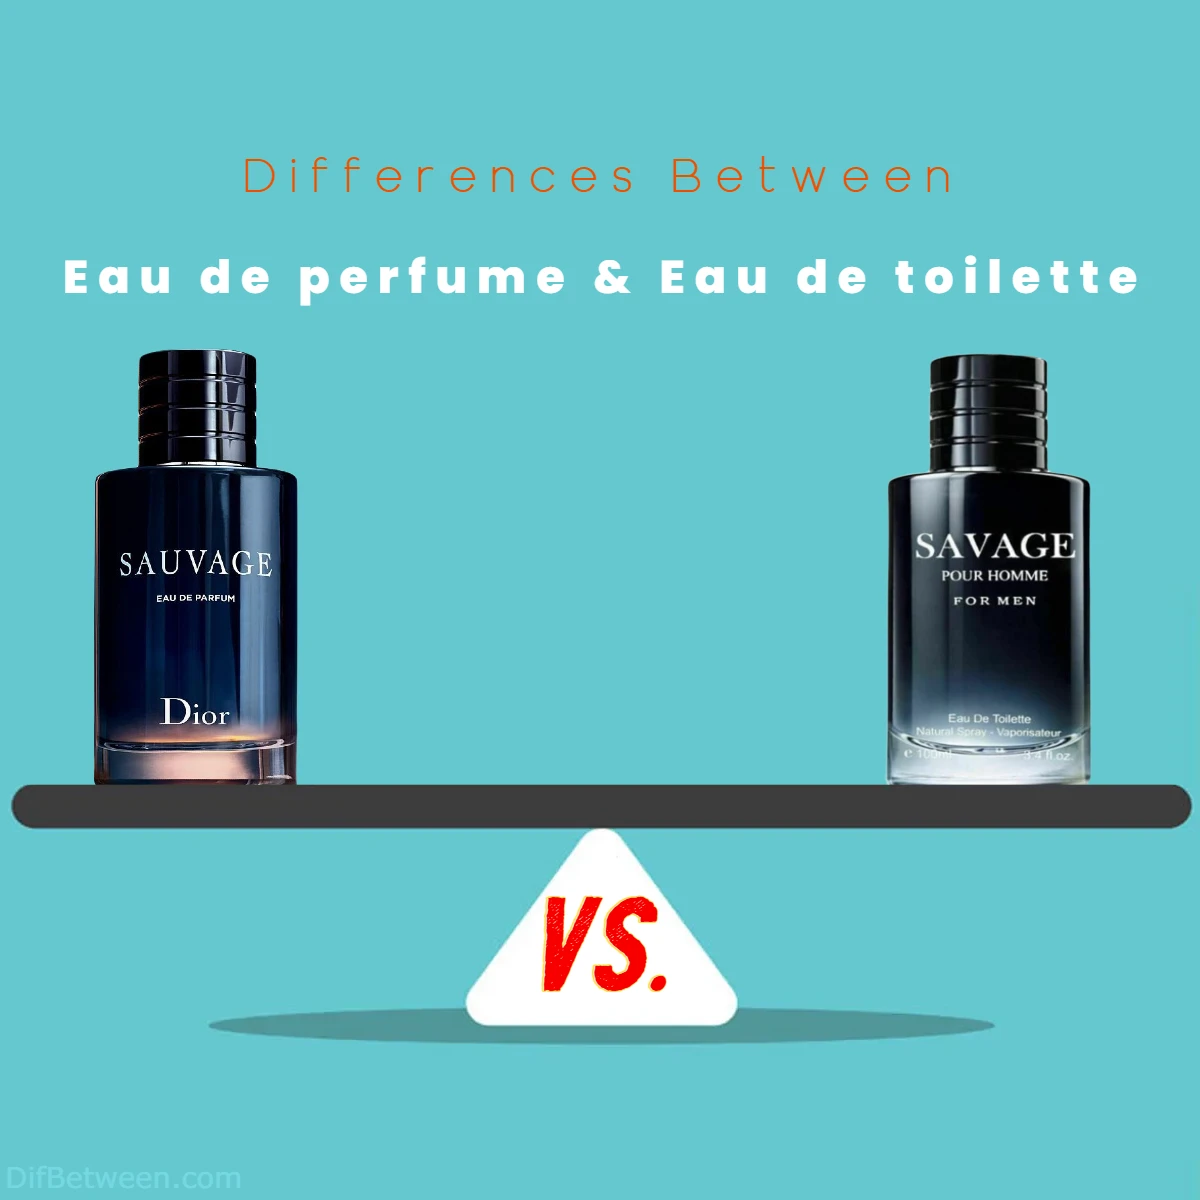 Differences Between Eau de perfume vs Eau de toilette